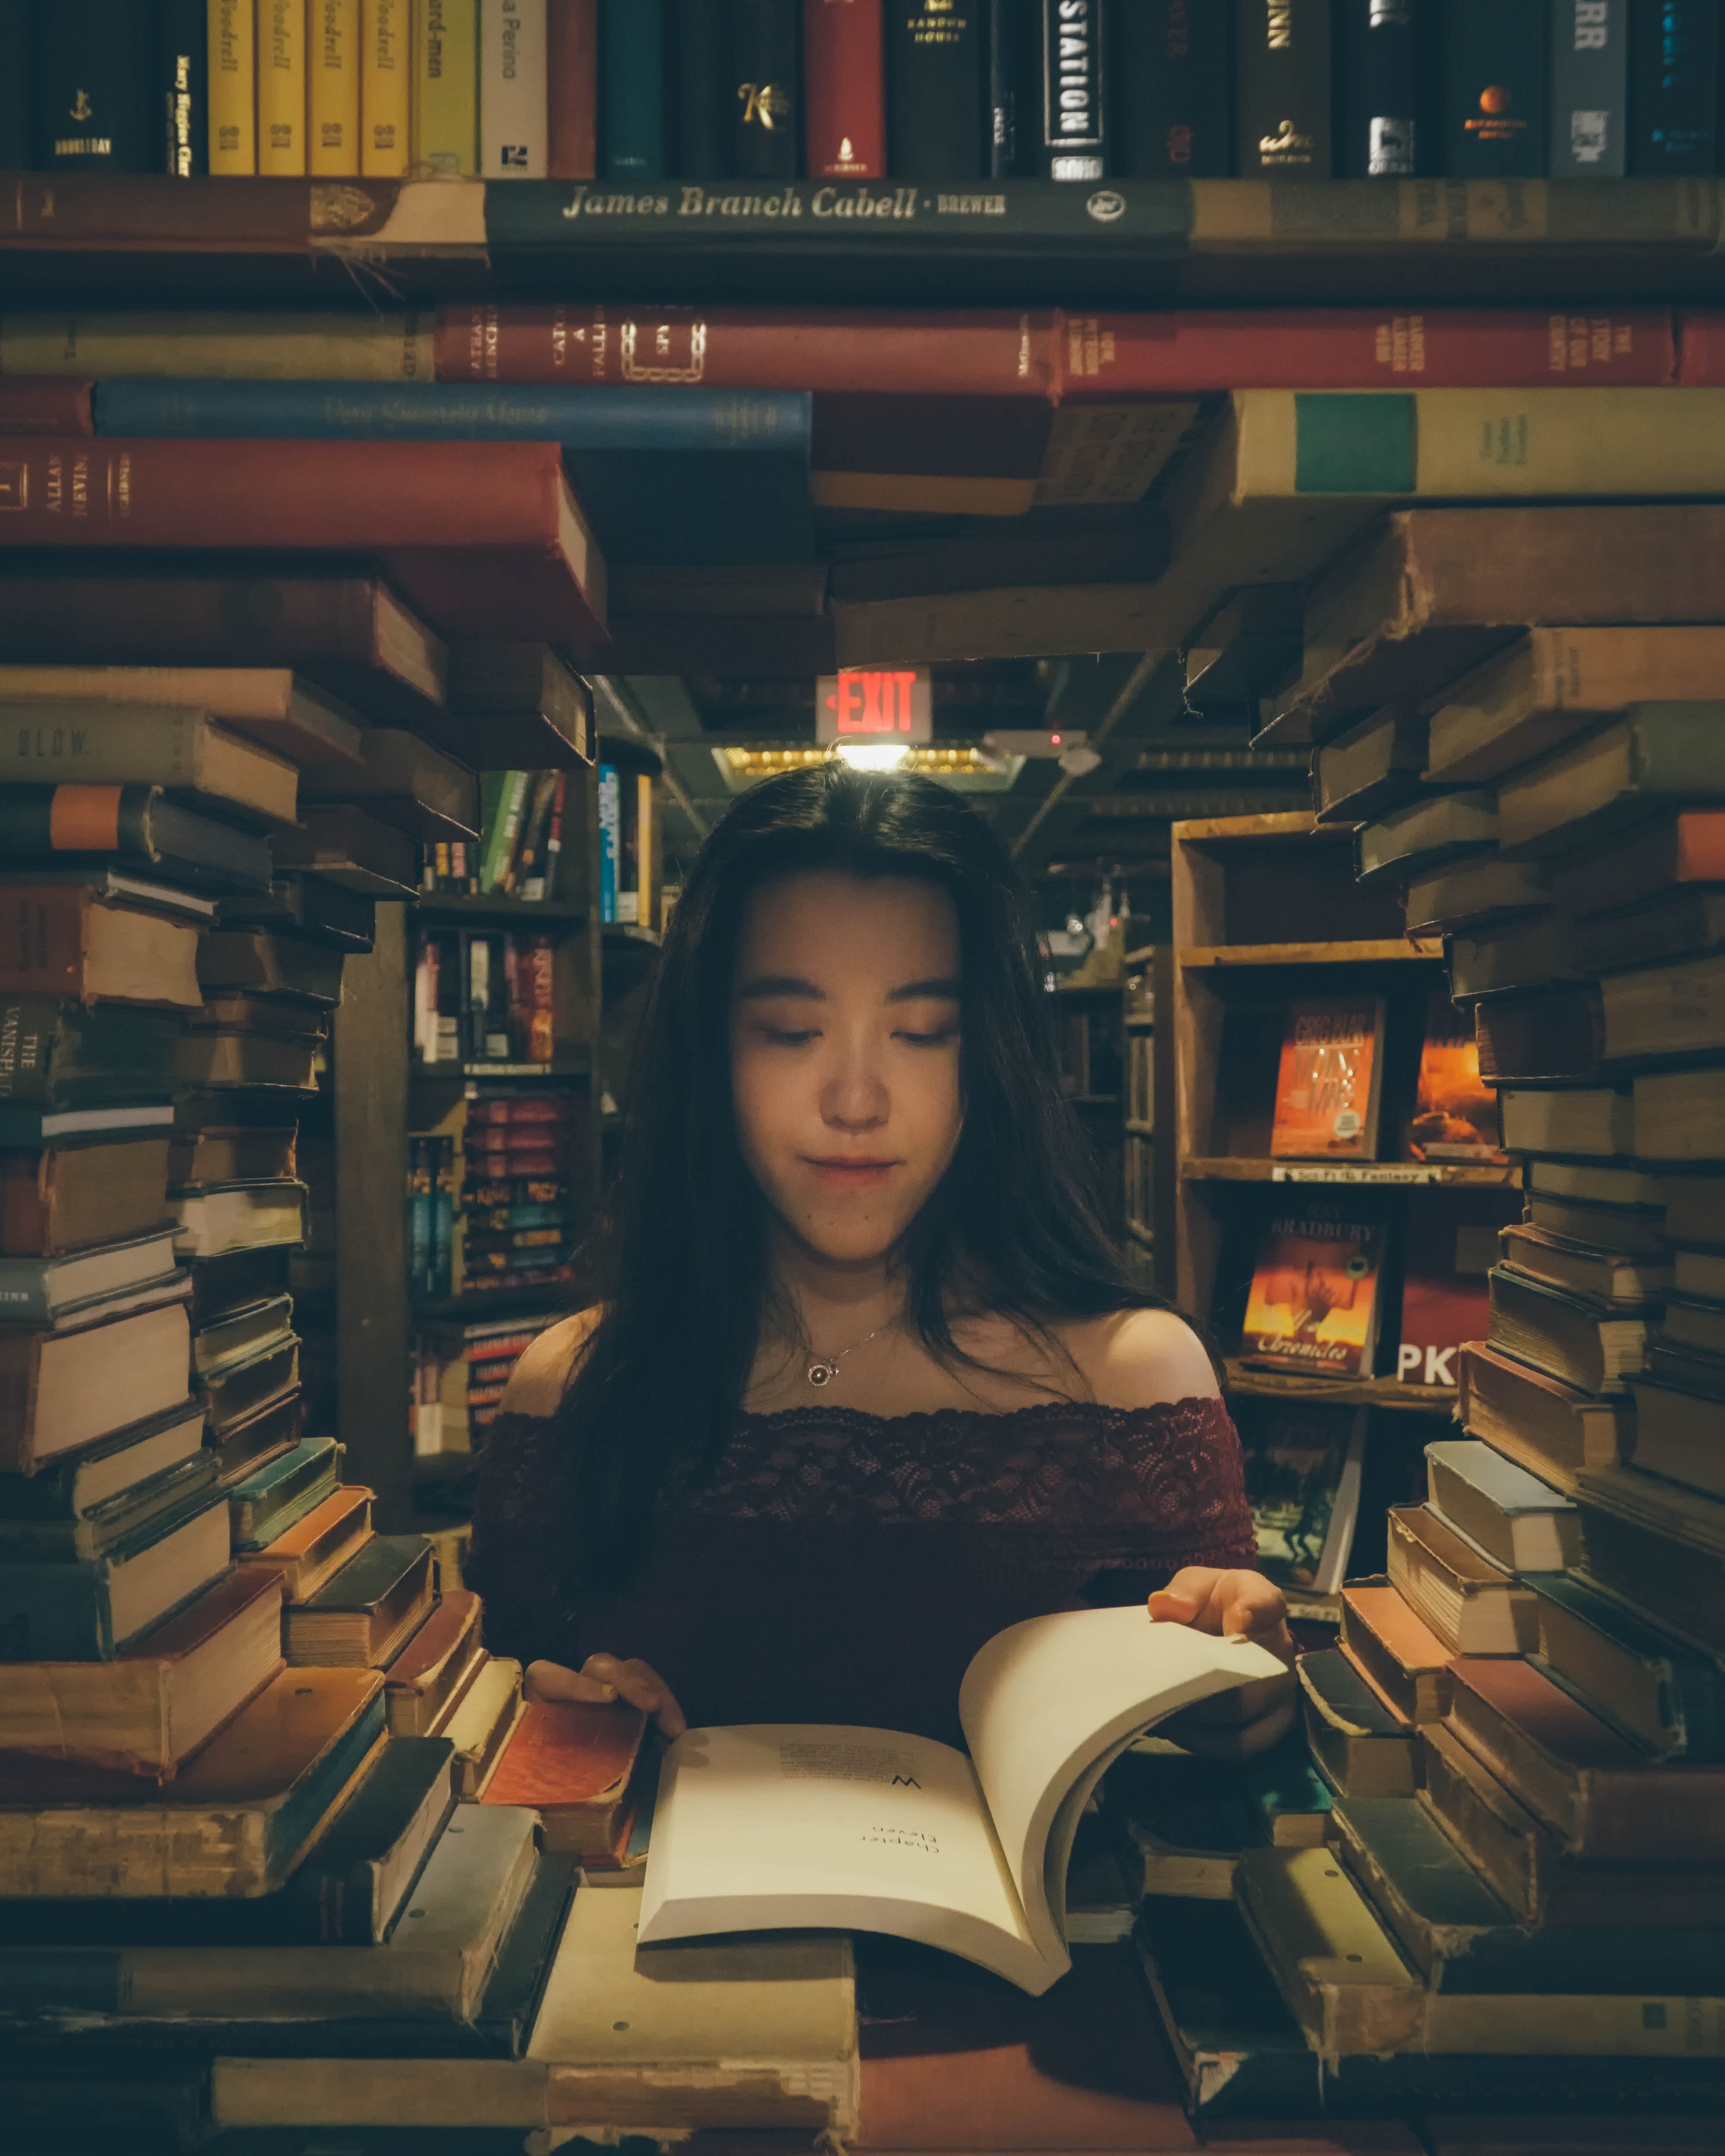 Una mujer rodeada de muchos libros en la biblioteca, lee uno de ellos.